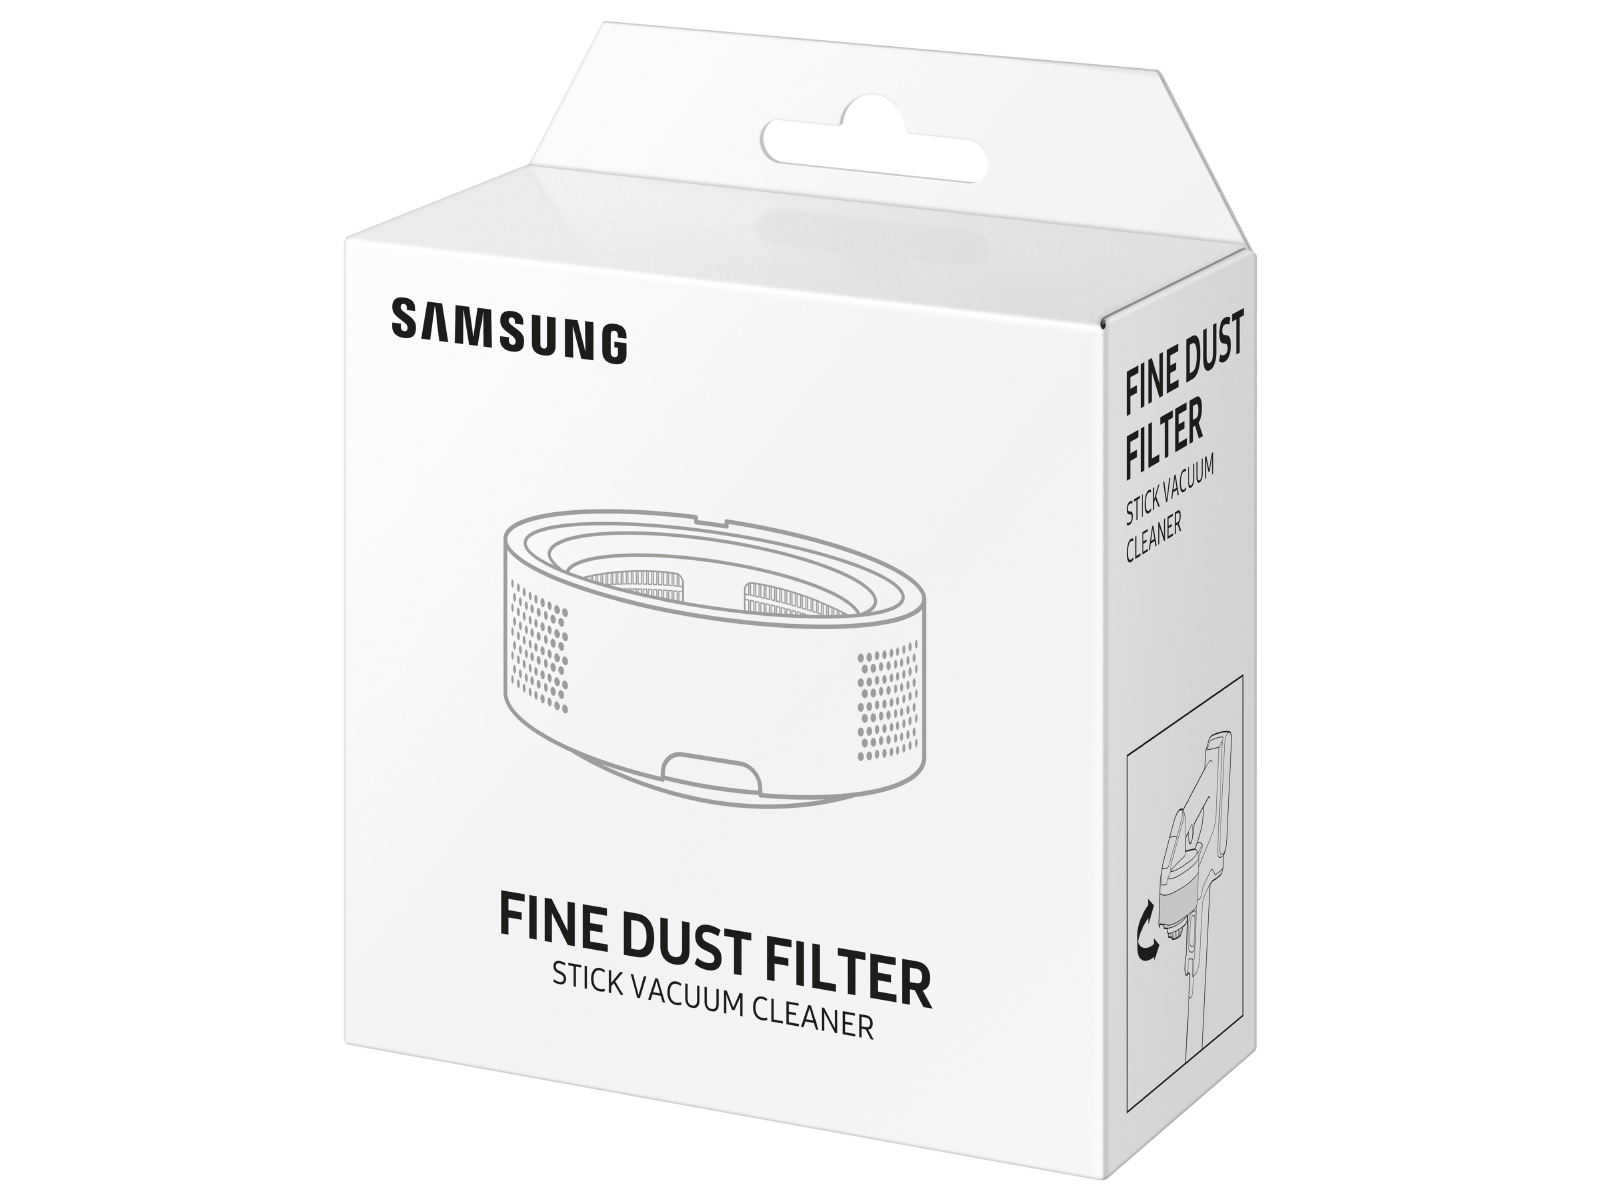 Samsung Jetâ¢ HEPA Exhaust Filter - Jetâ¢ 90 Complete and Jetâ¢ 75 Complete Home Appliances 